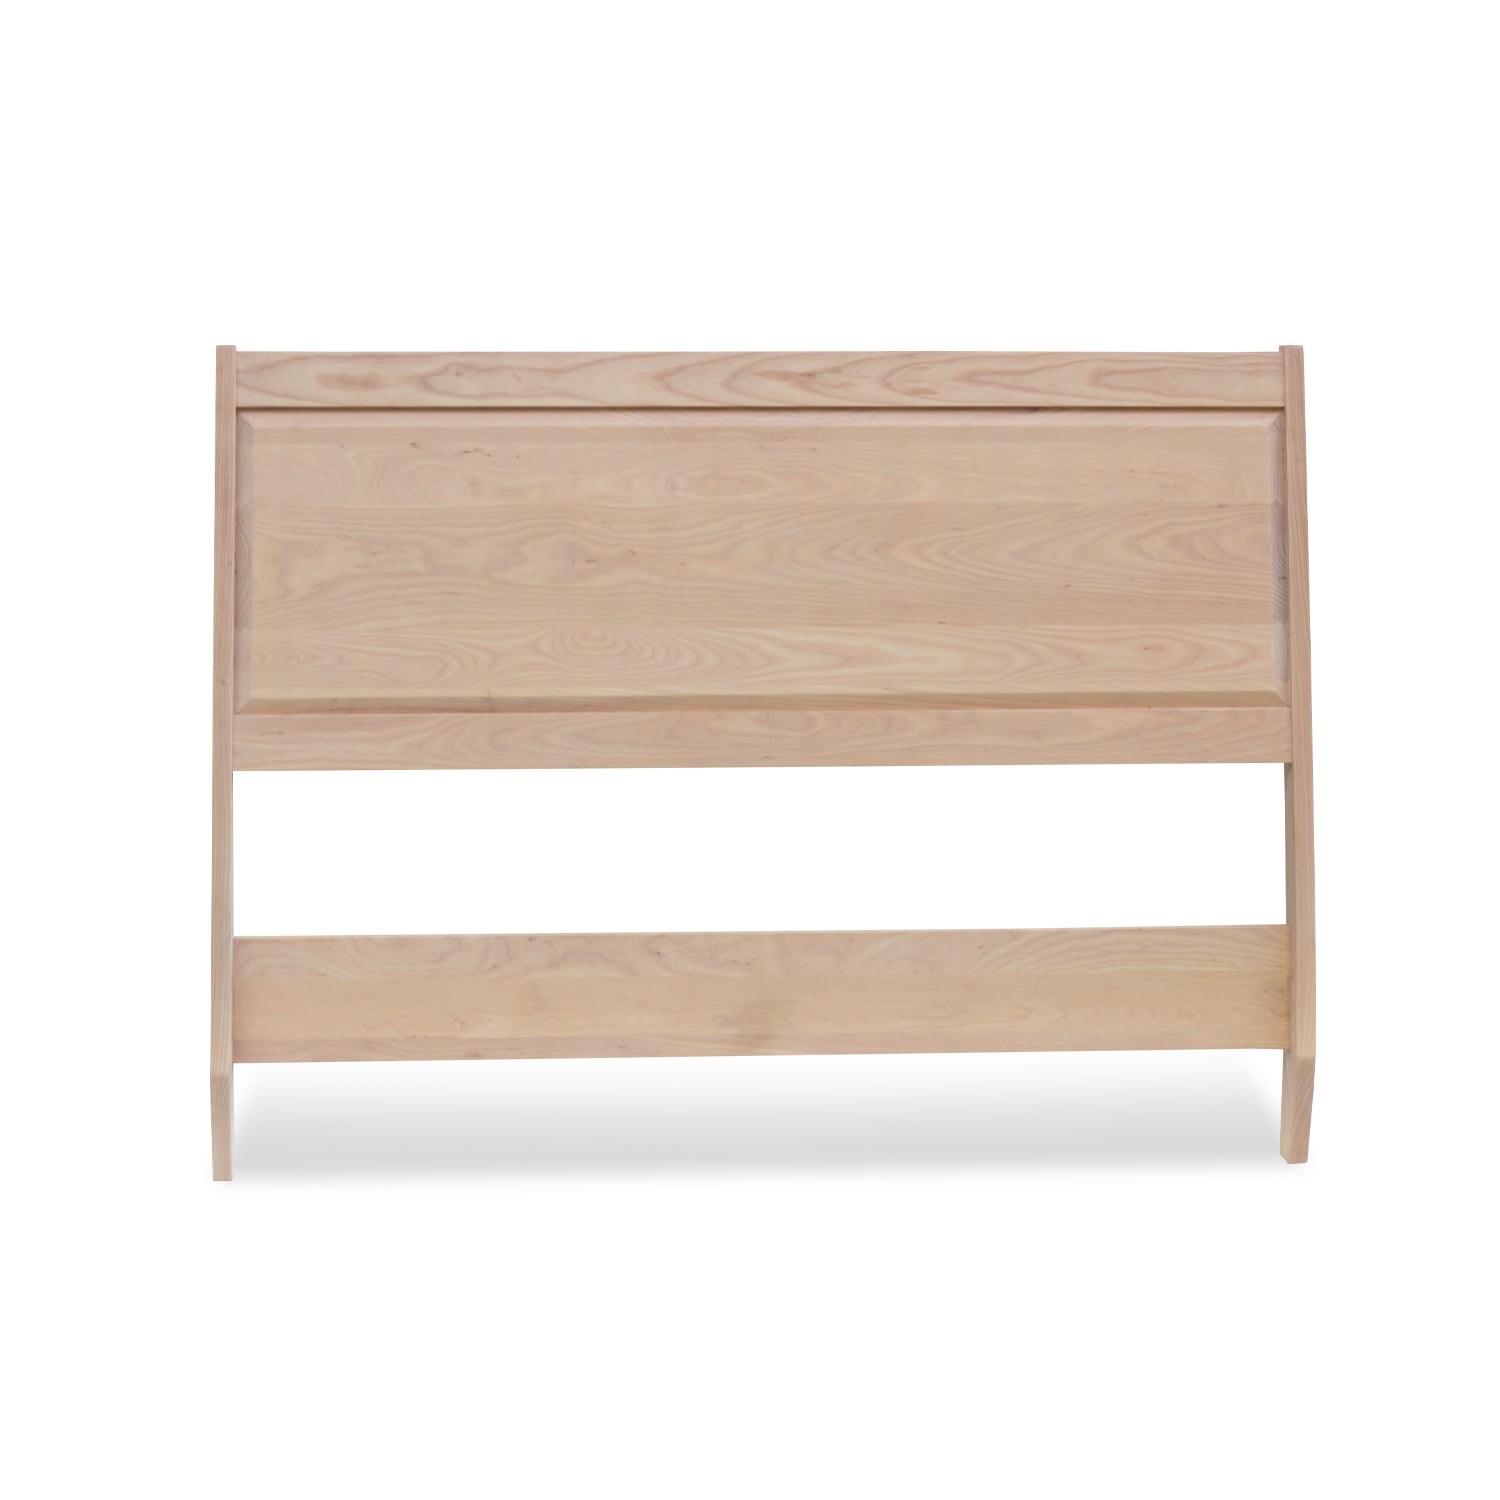 Isabella Headboard - Lanark Solid Wood Headboards Furniture